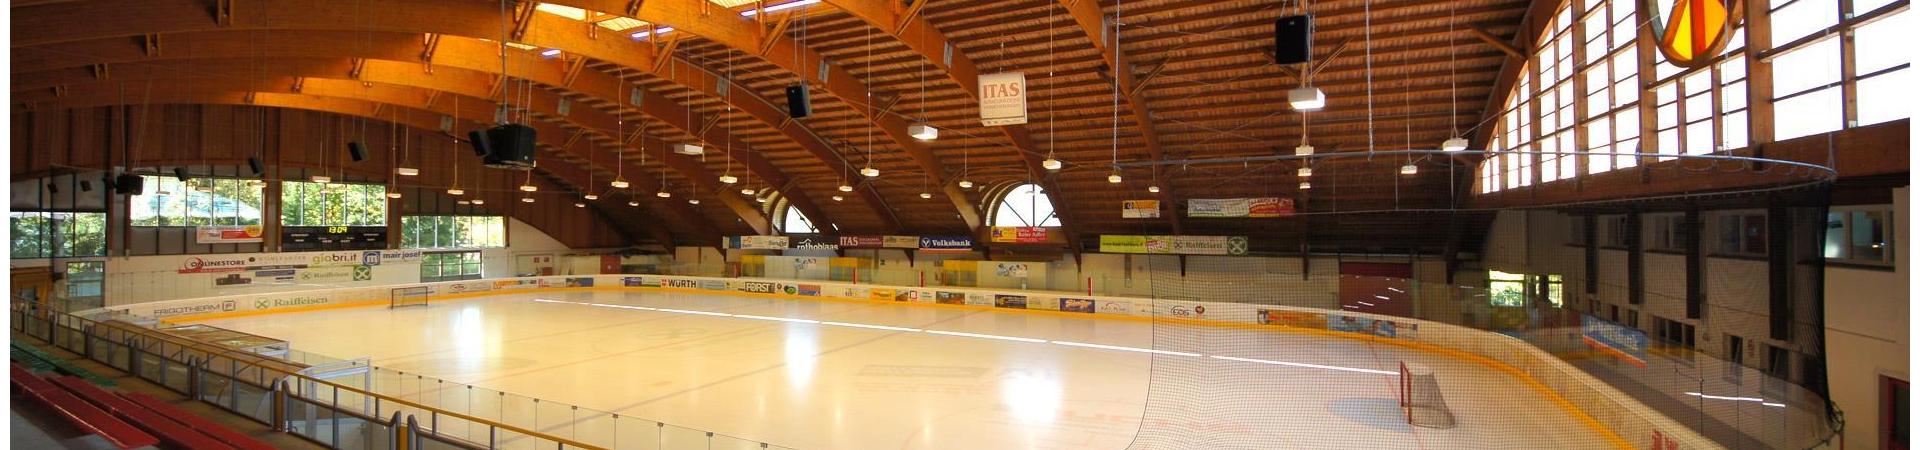 Sport-IceForum-Eishalle-Latsch-Martell-vivalatsch